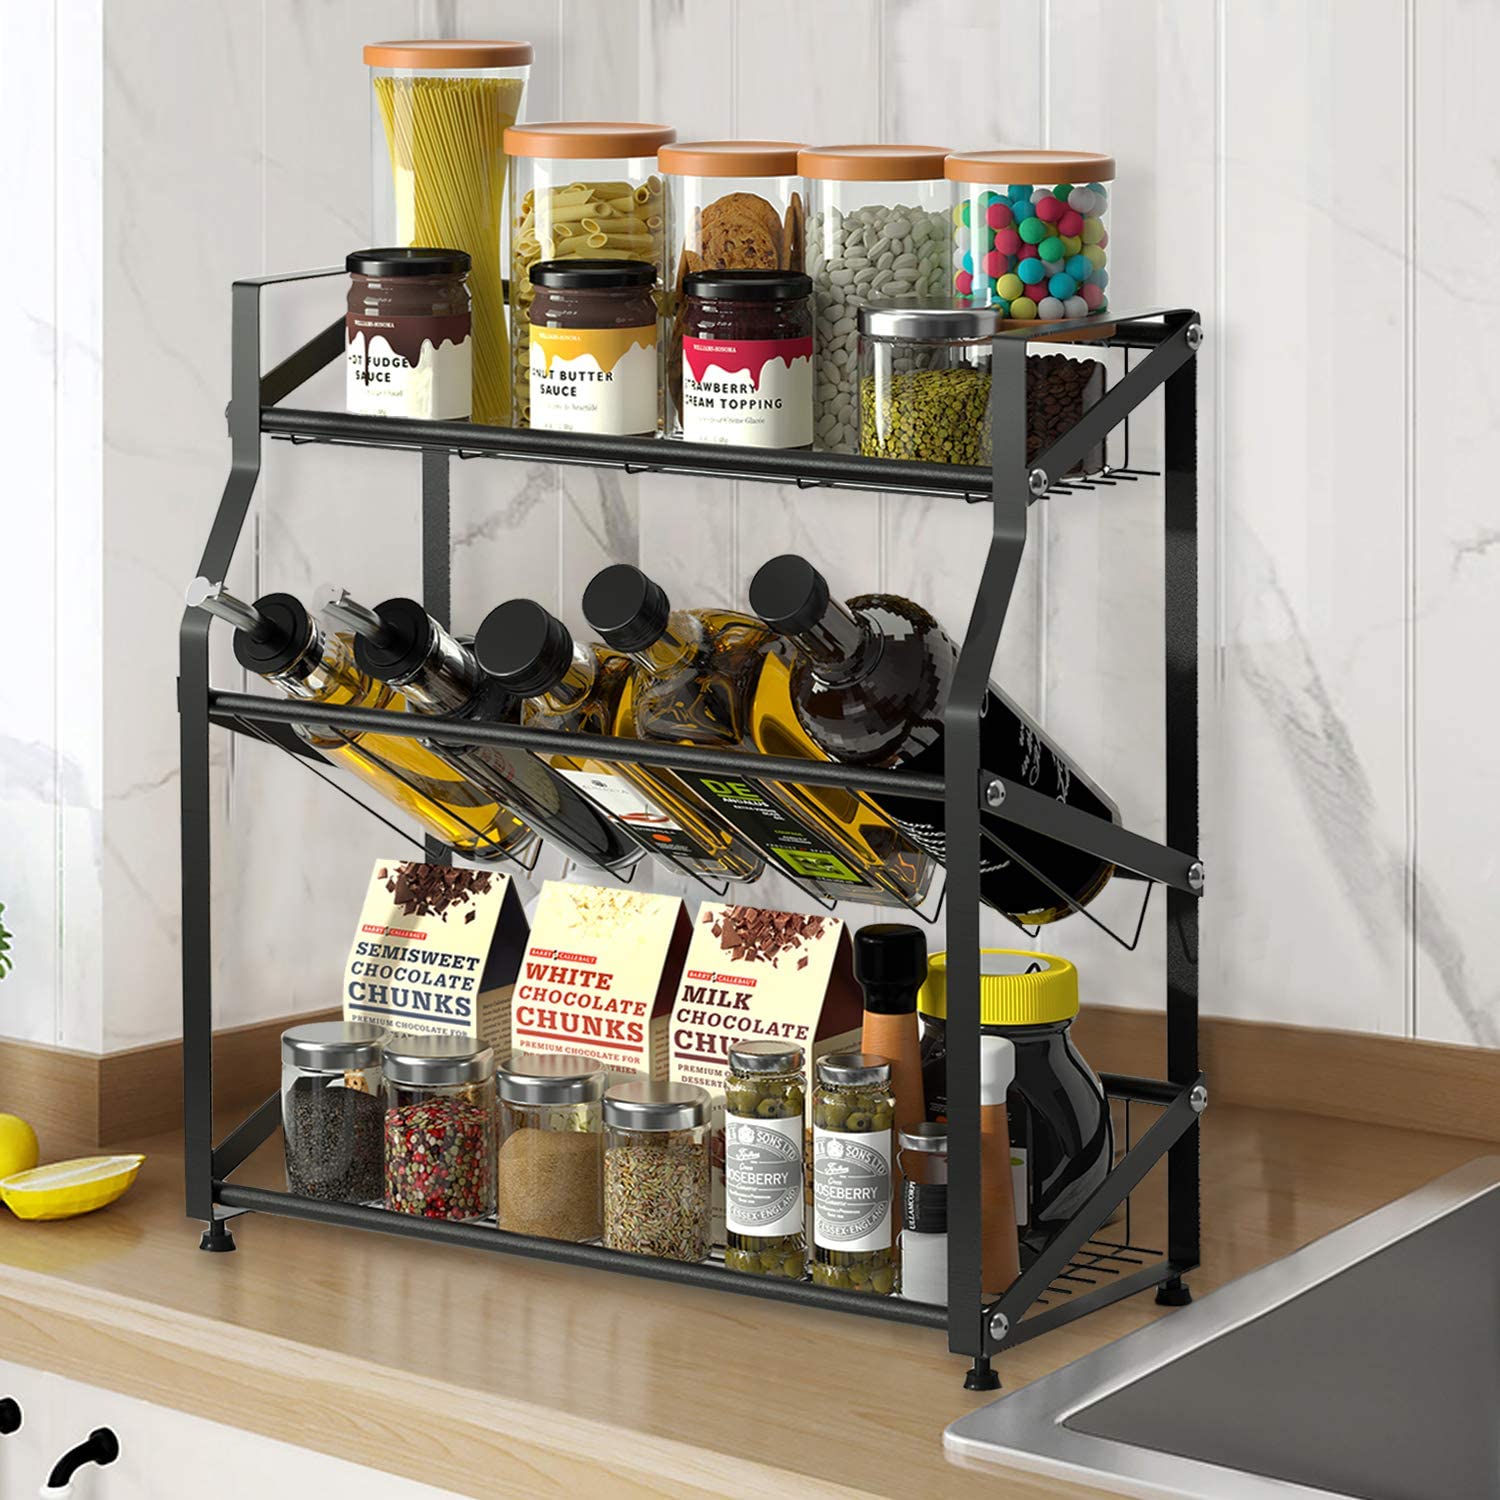 Spice Rack Organizer 3 Tiers Freestanding Kitchen Metal Spice Holder Storage, Black - image 3 of 3